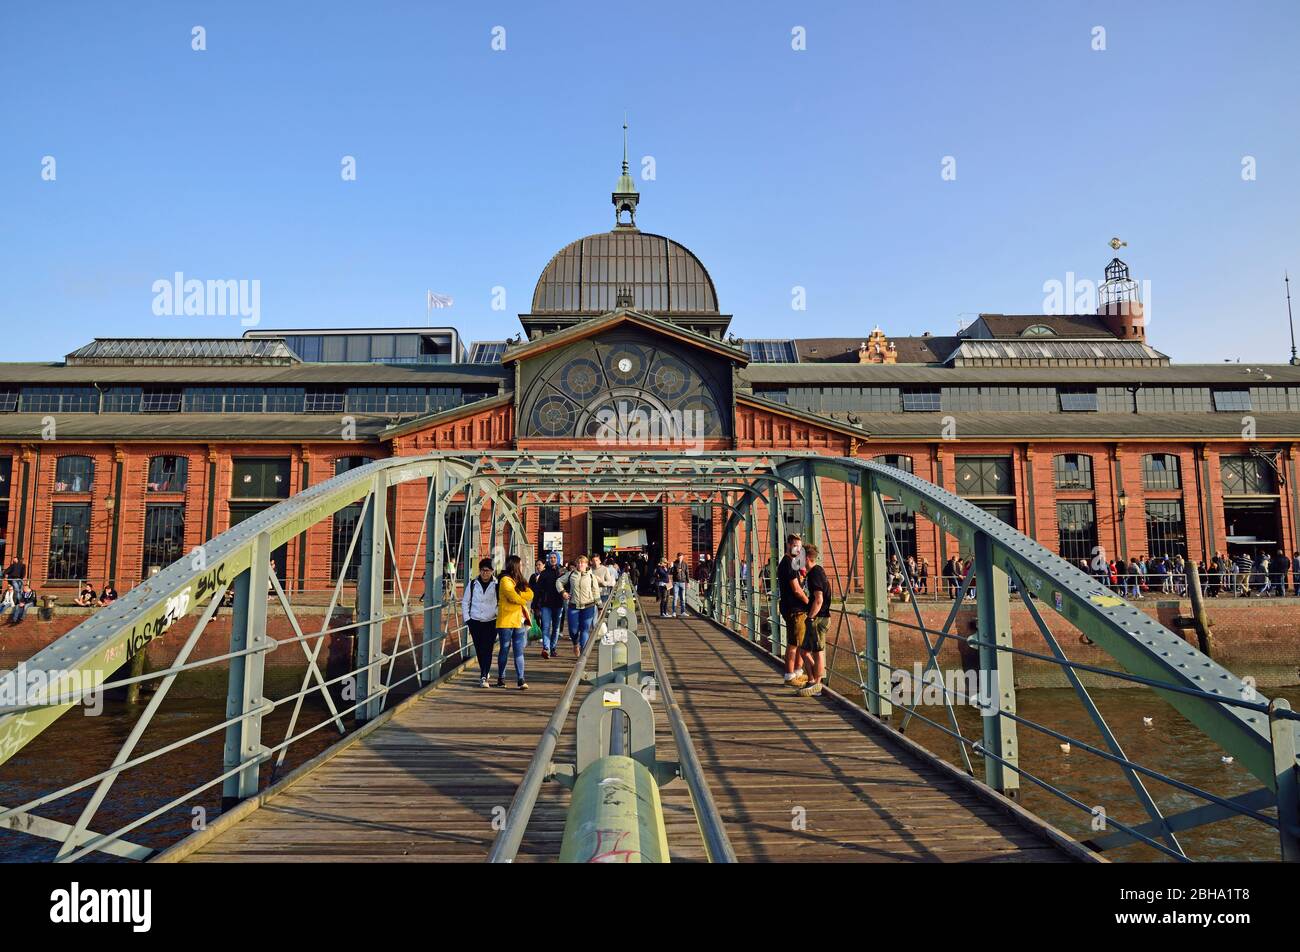 Europa, Alemania, Hamburgo, St. Pauli, sala de subastas de pescado, centro de eventos, puente del muelle, Foto de stock